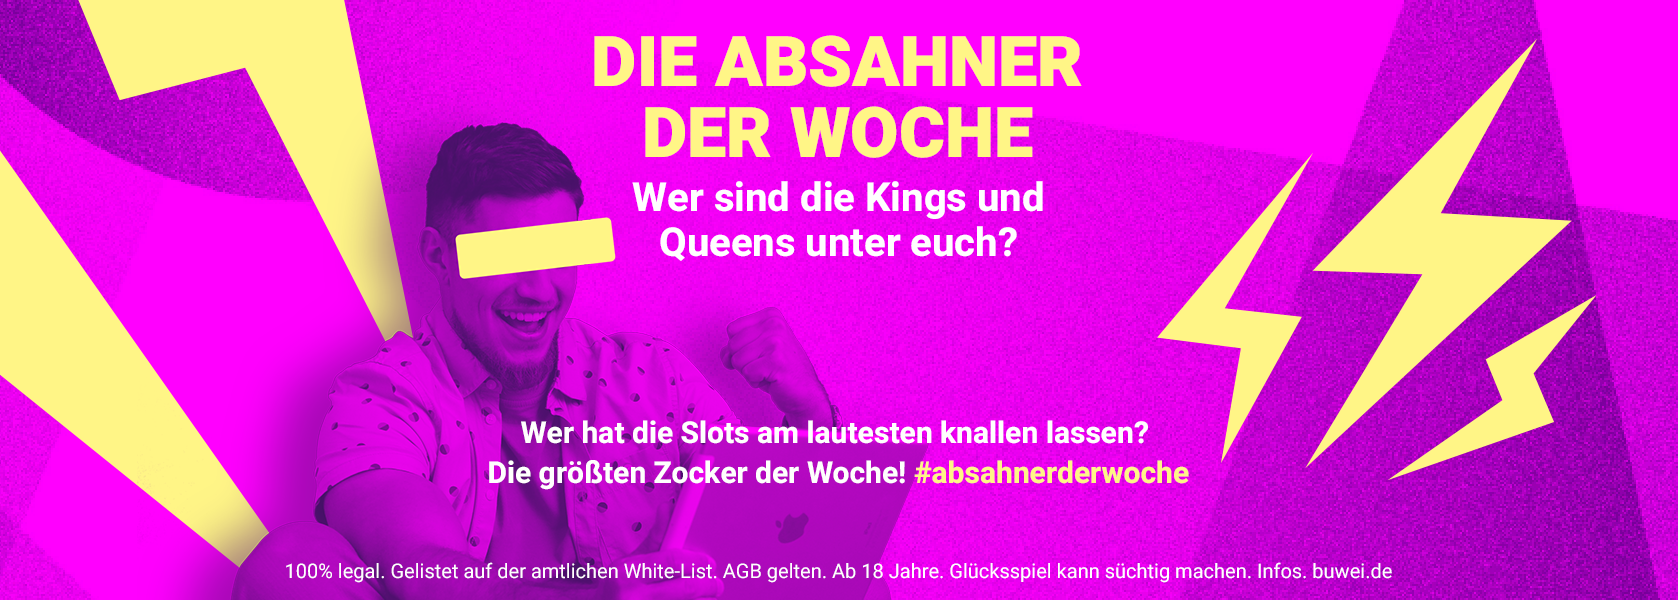 BBO_Die-Absahner-der-Woche_1000x600